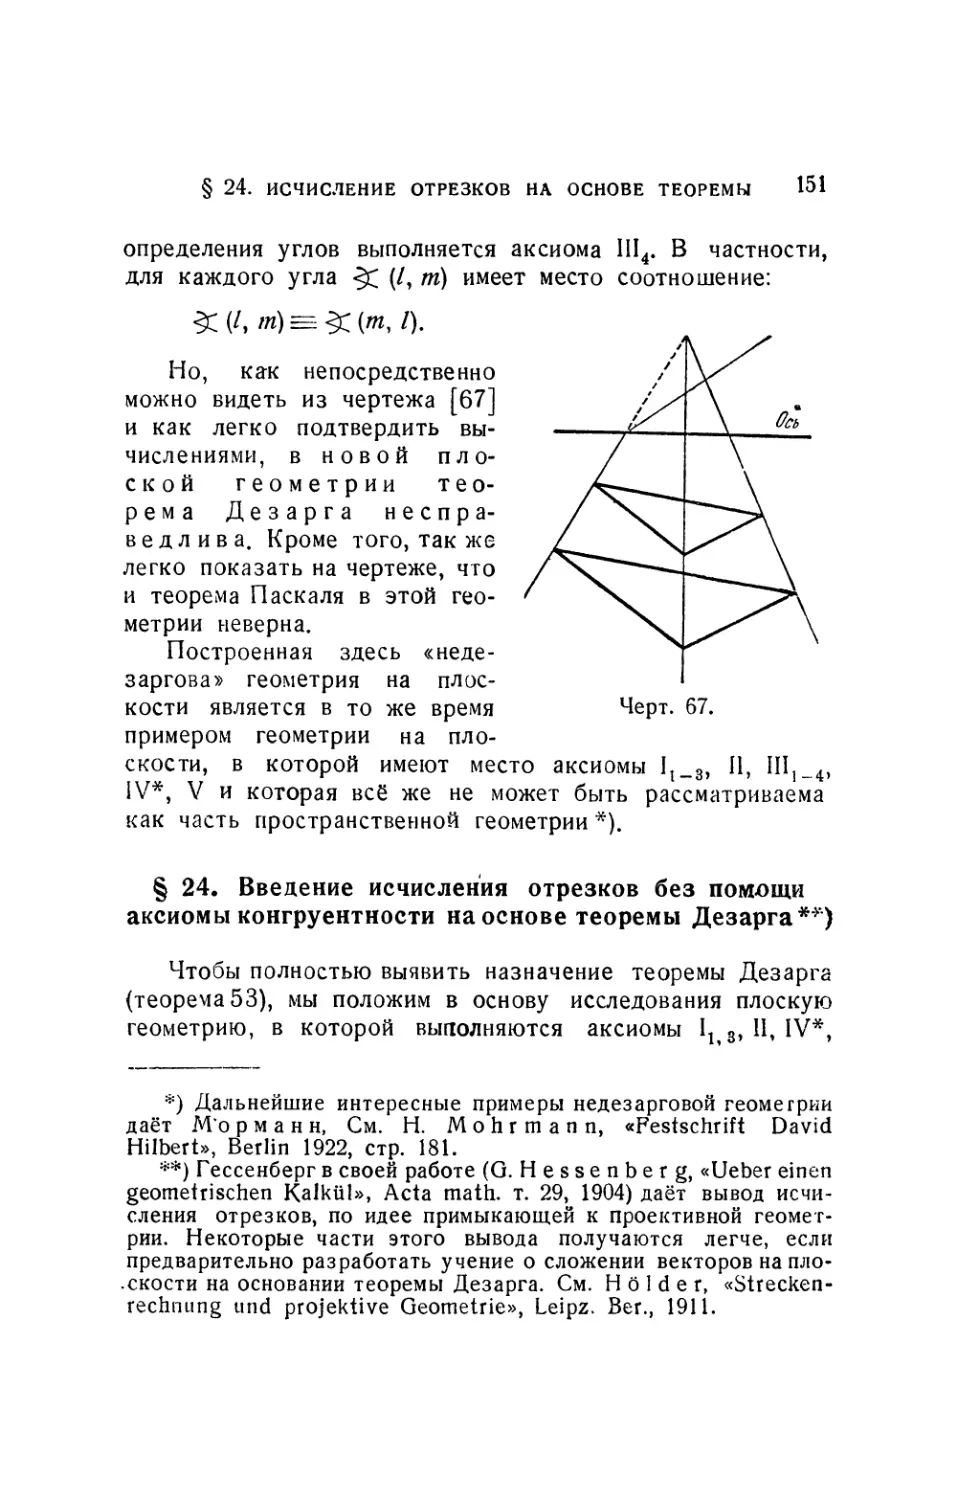 § 24. Введение исчисления отрезков без помощи аксиомы конгруентности на основе теоремы Дезарга